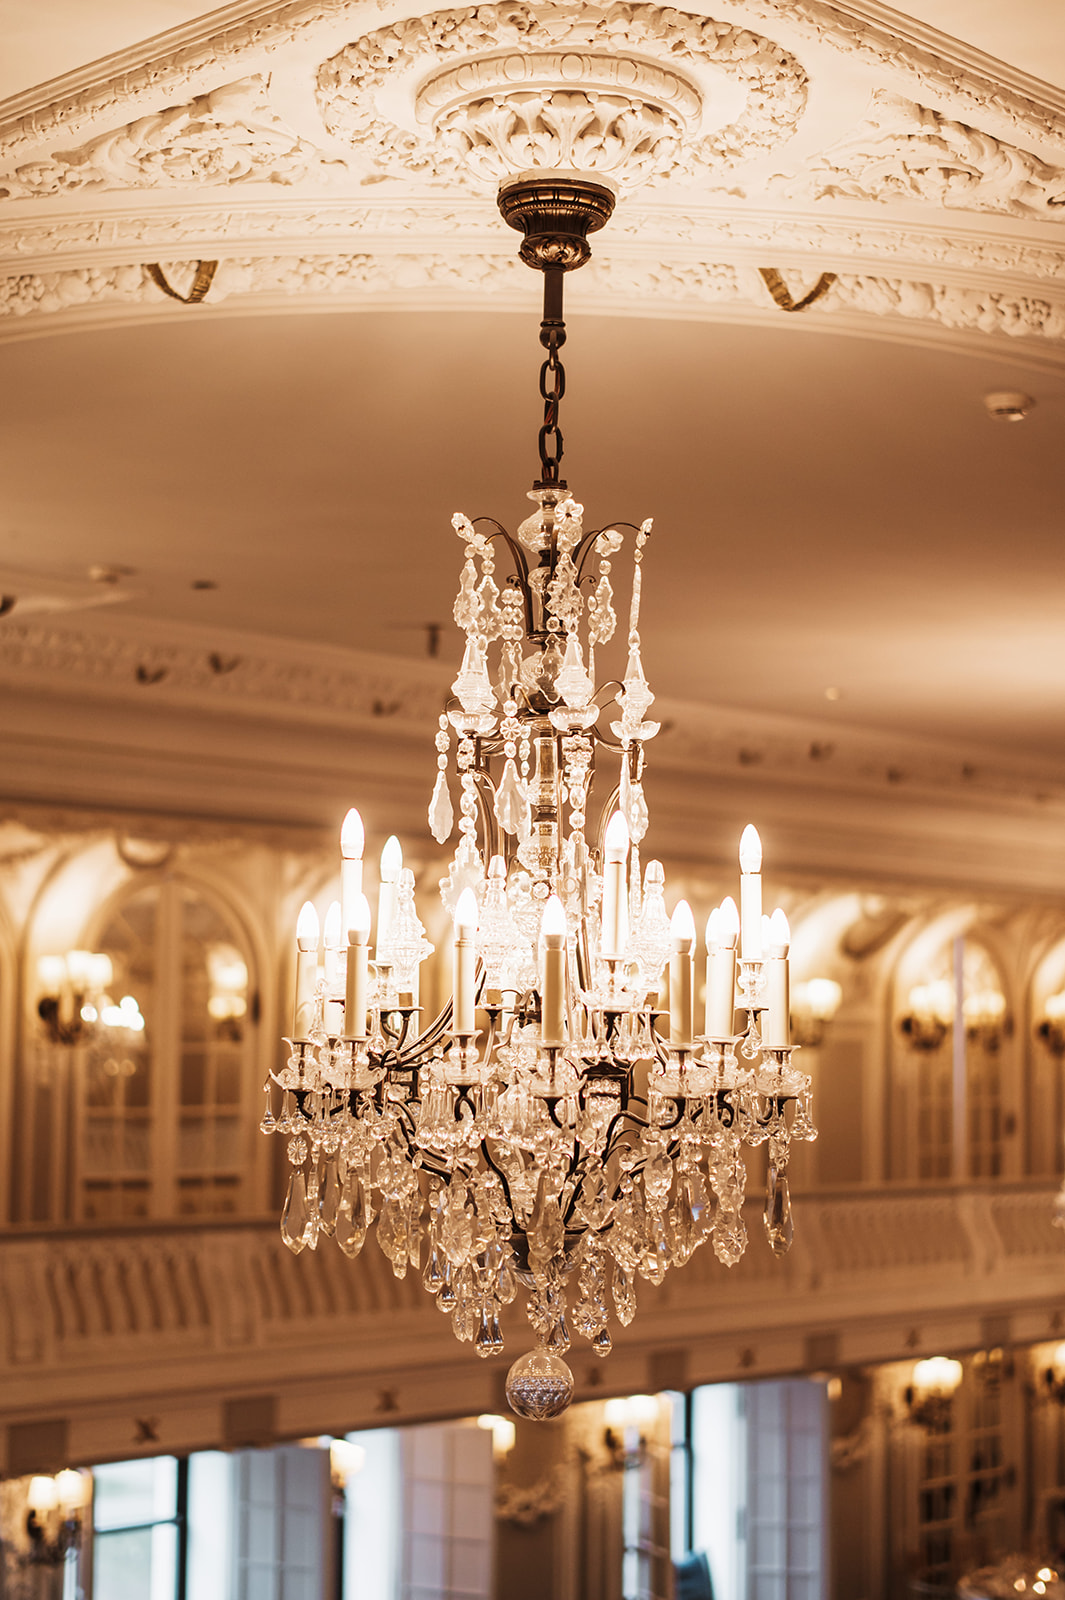 The Blackstone hotel in chicago wedding photos details chandelier